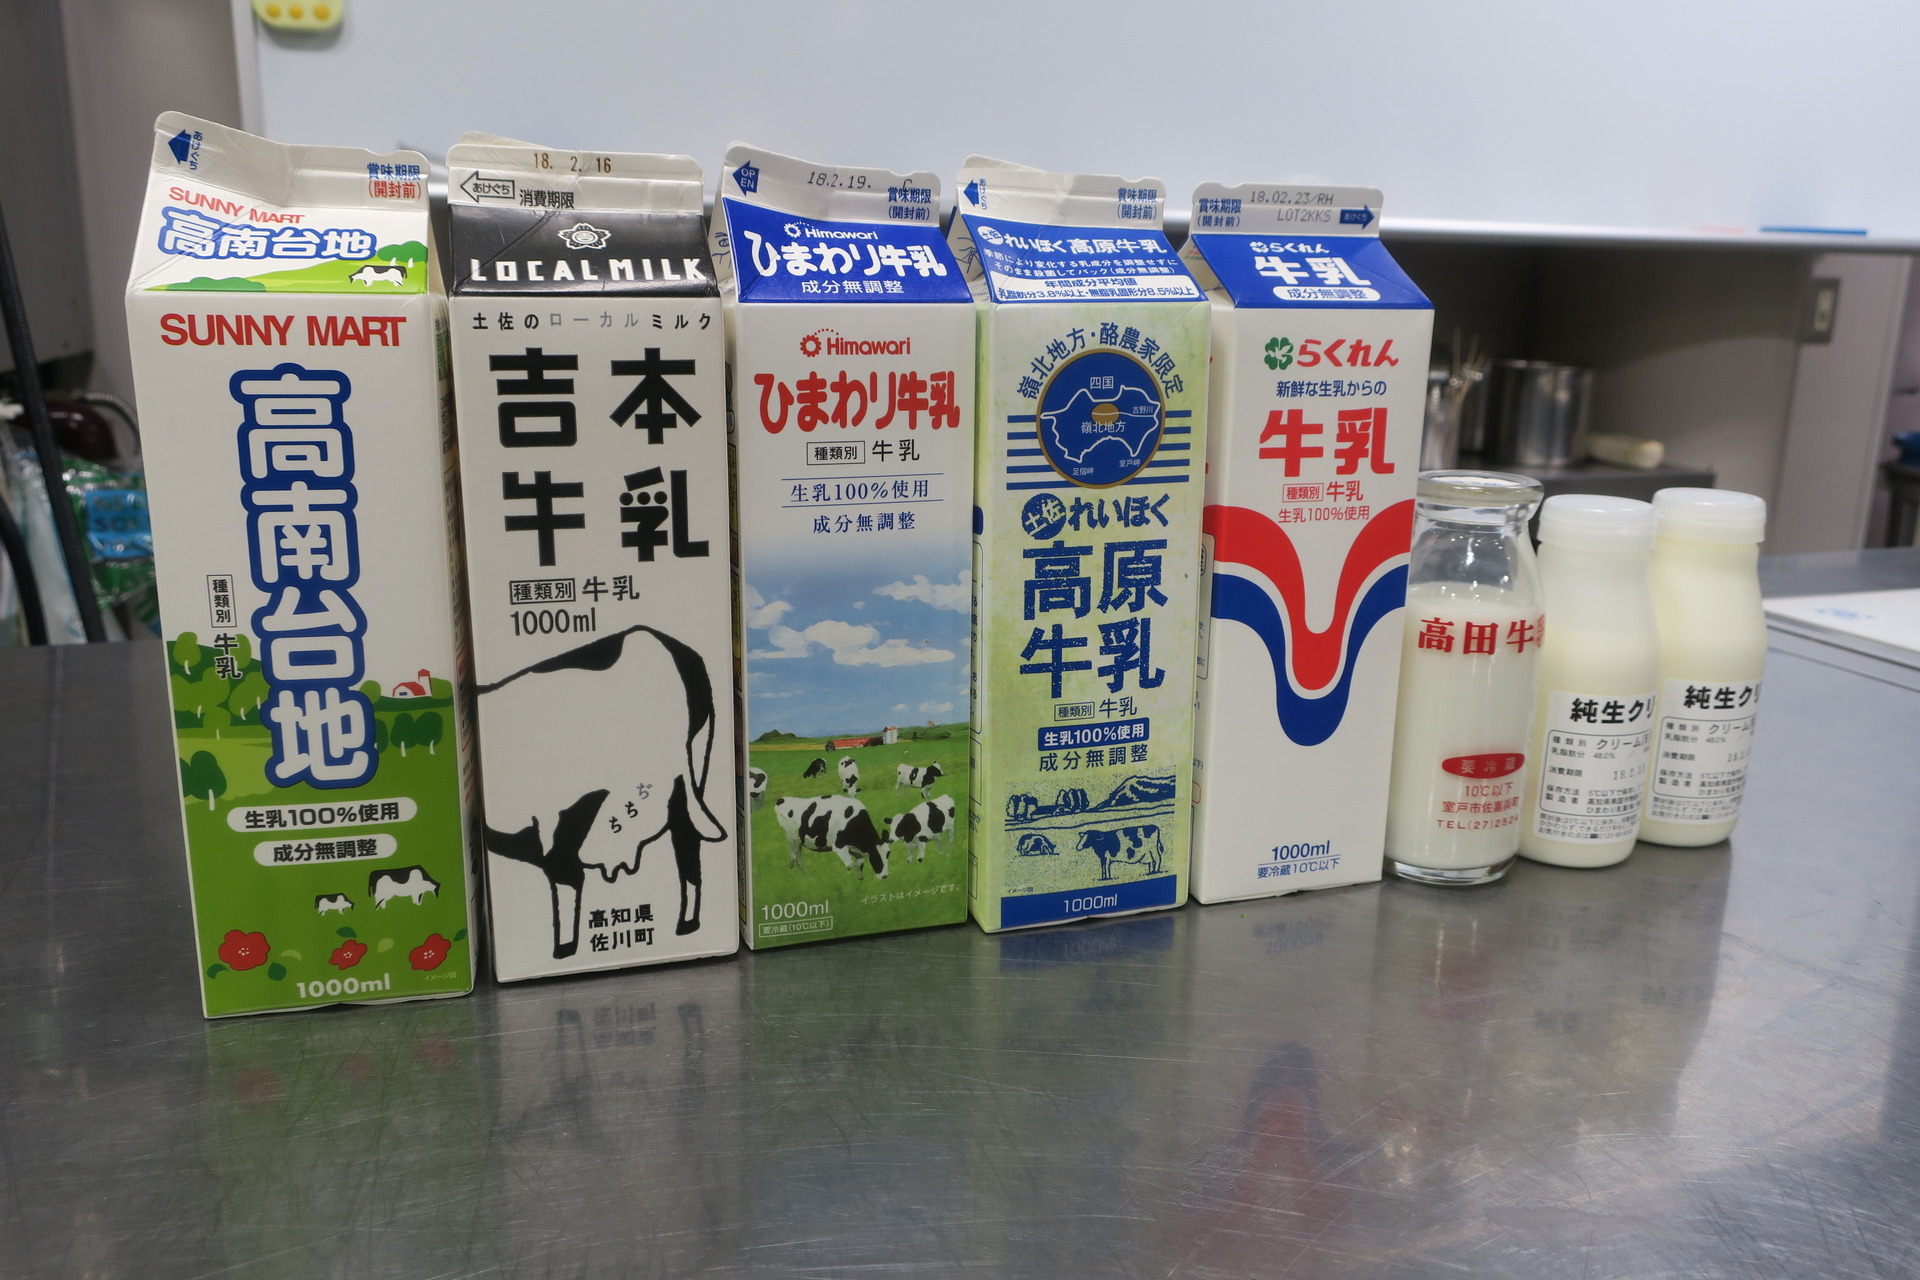 今回使用された高知県を代表する牛乳